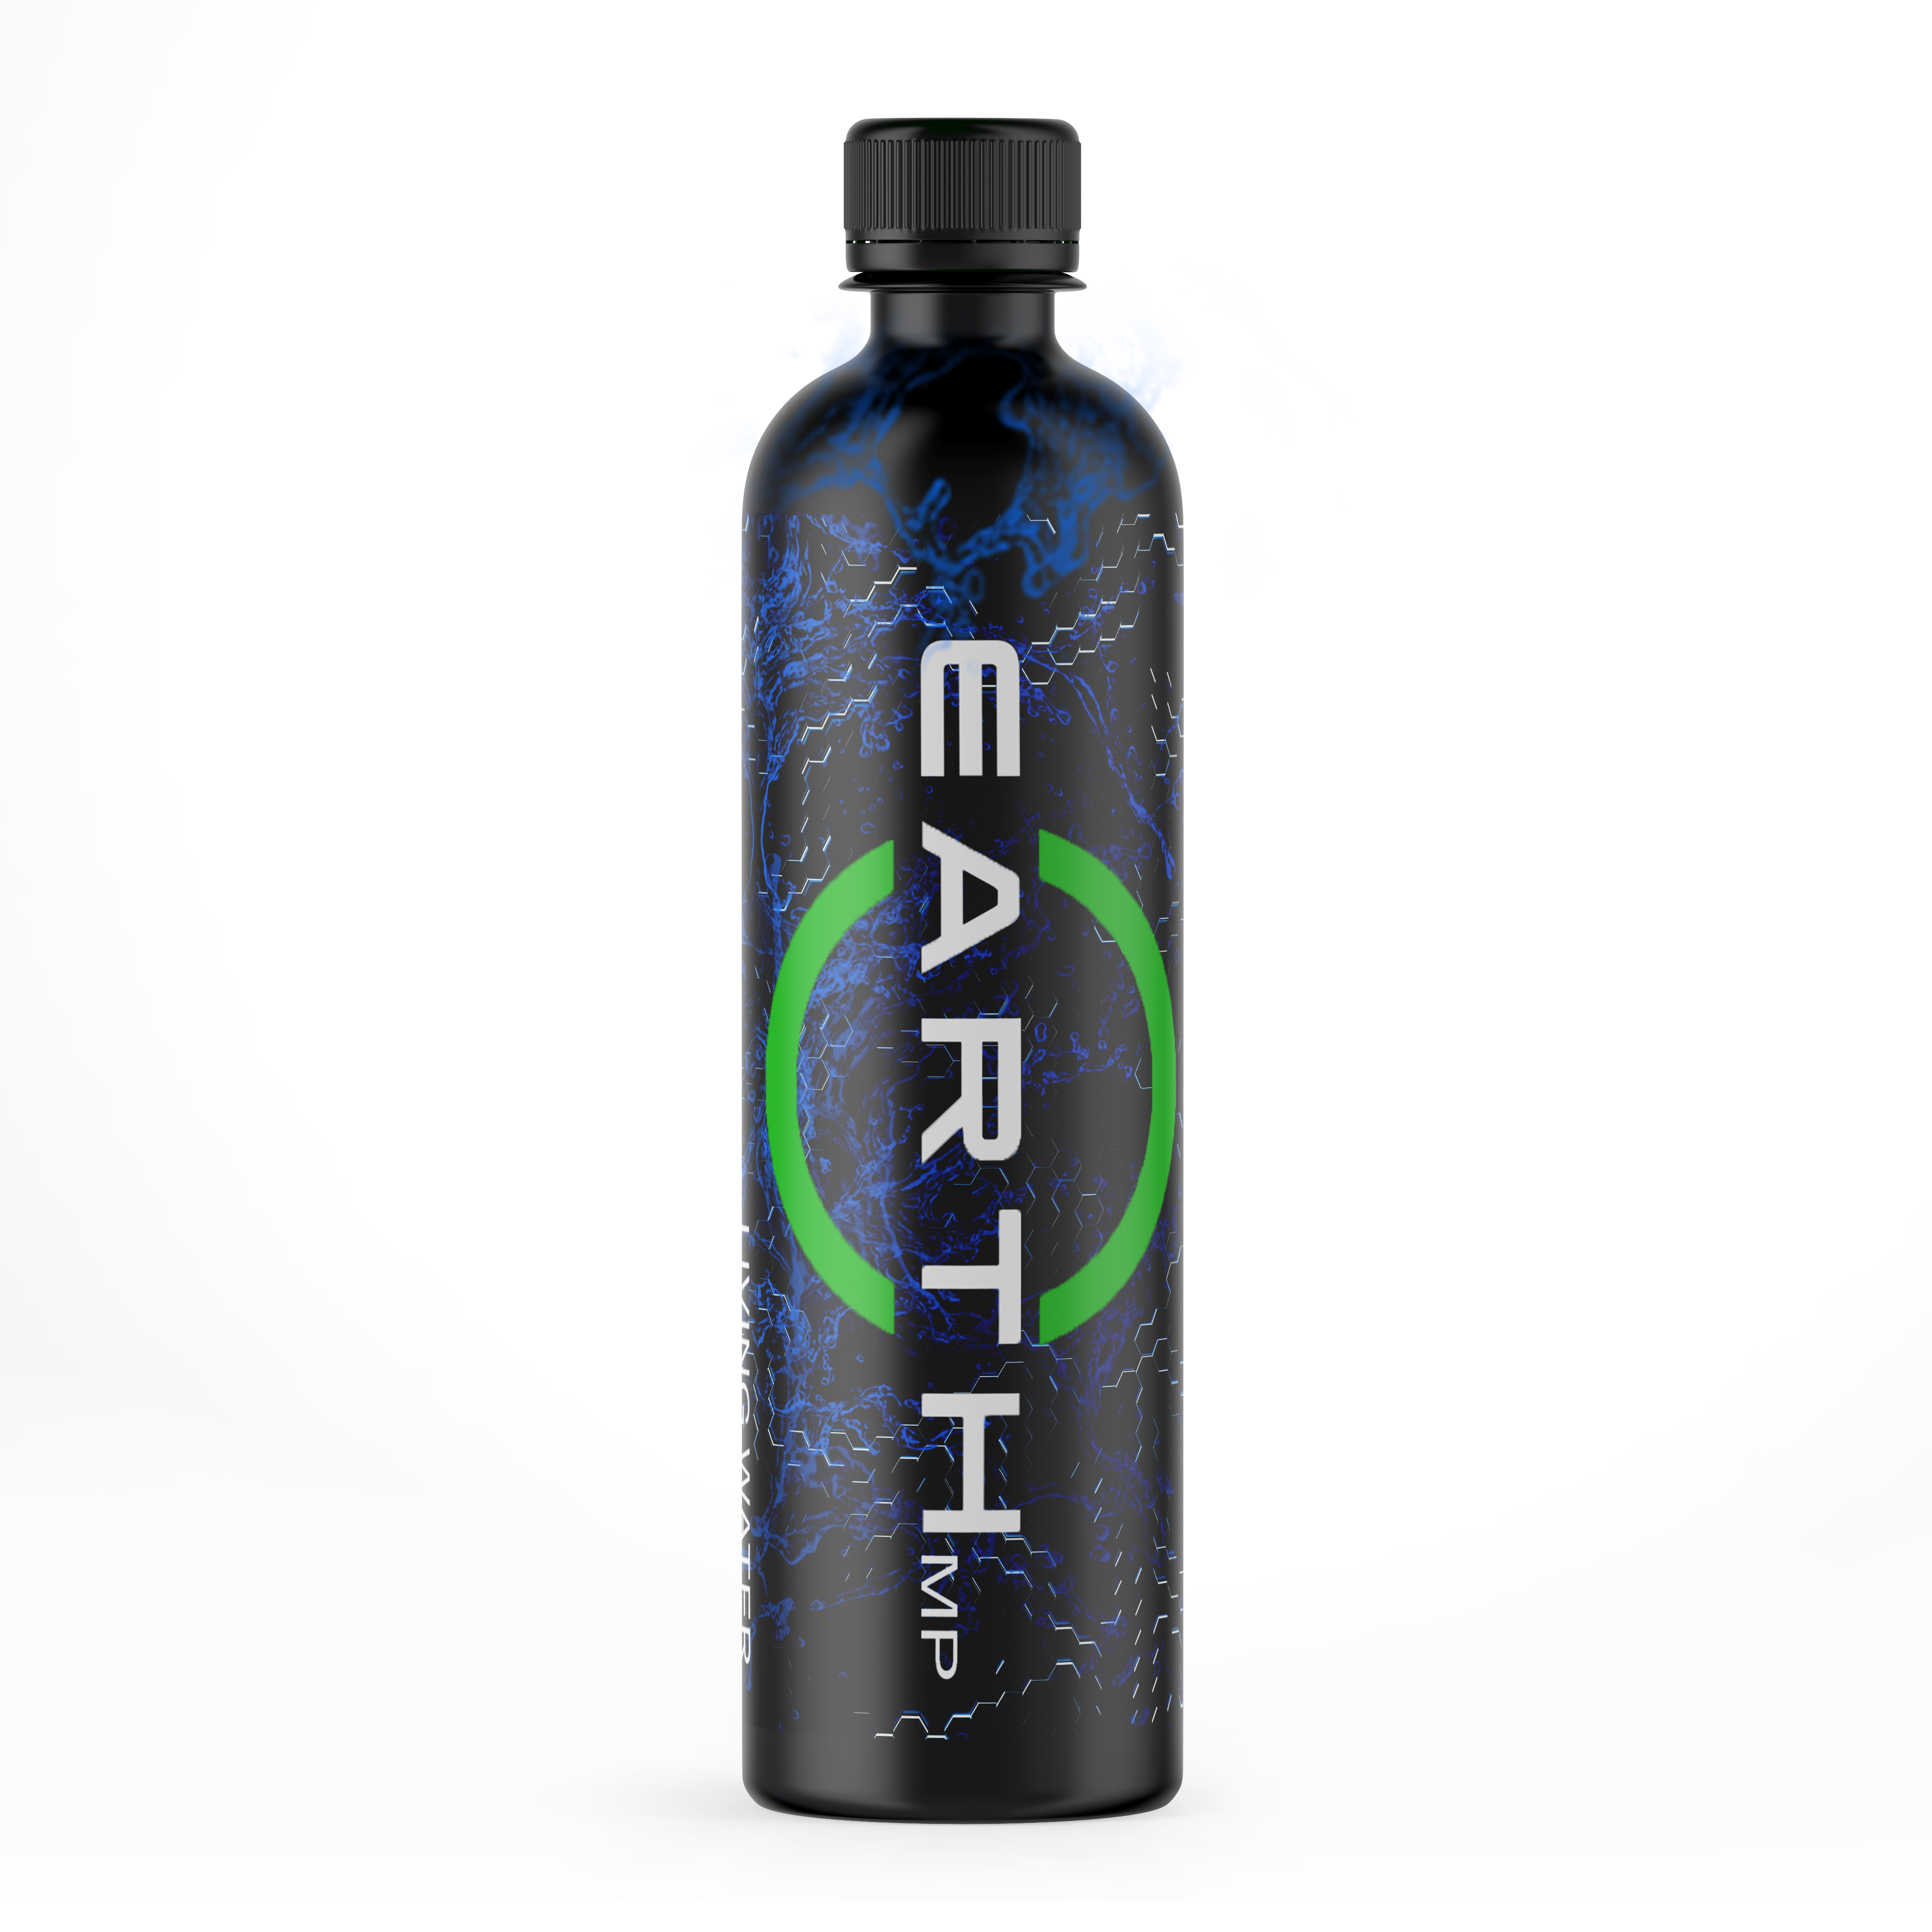 Earth MP Water Bottle matte plastic drink bottle